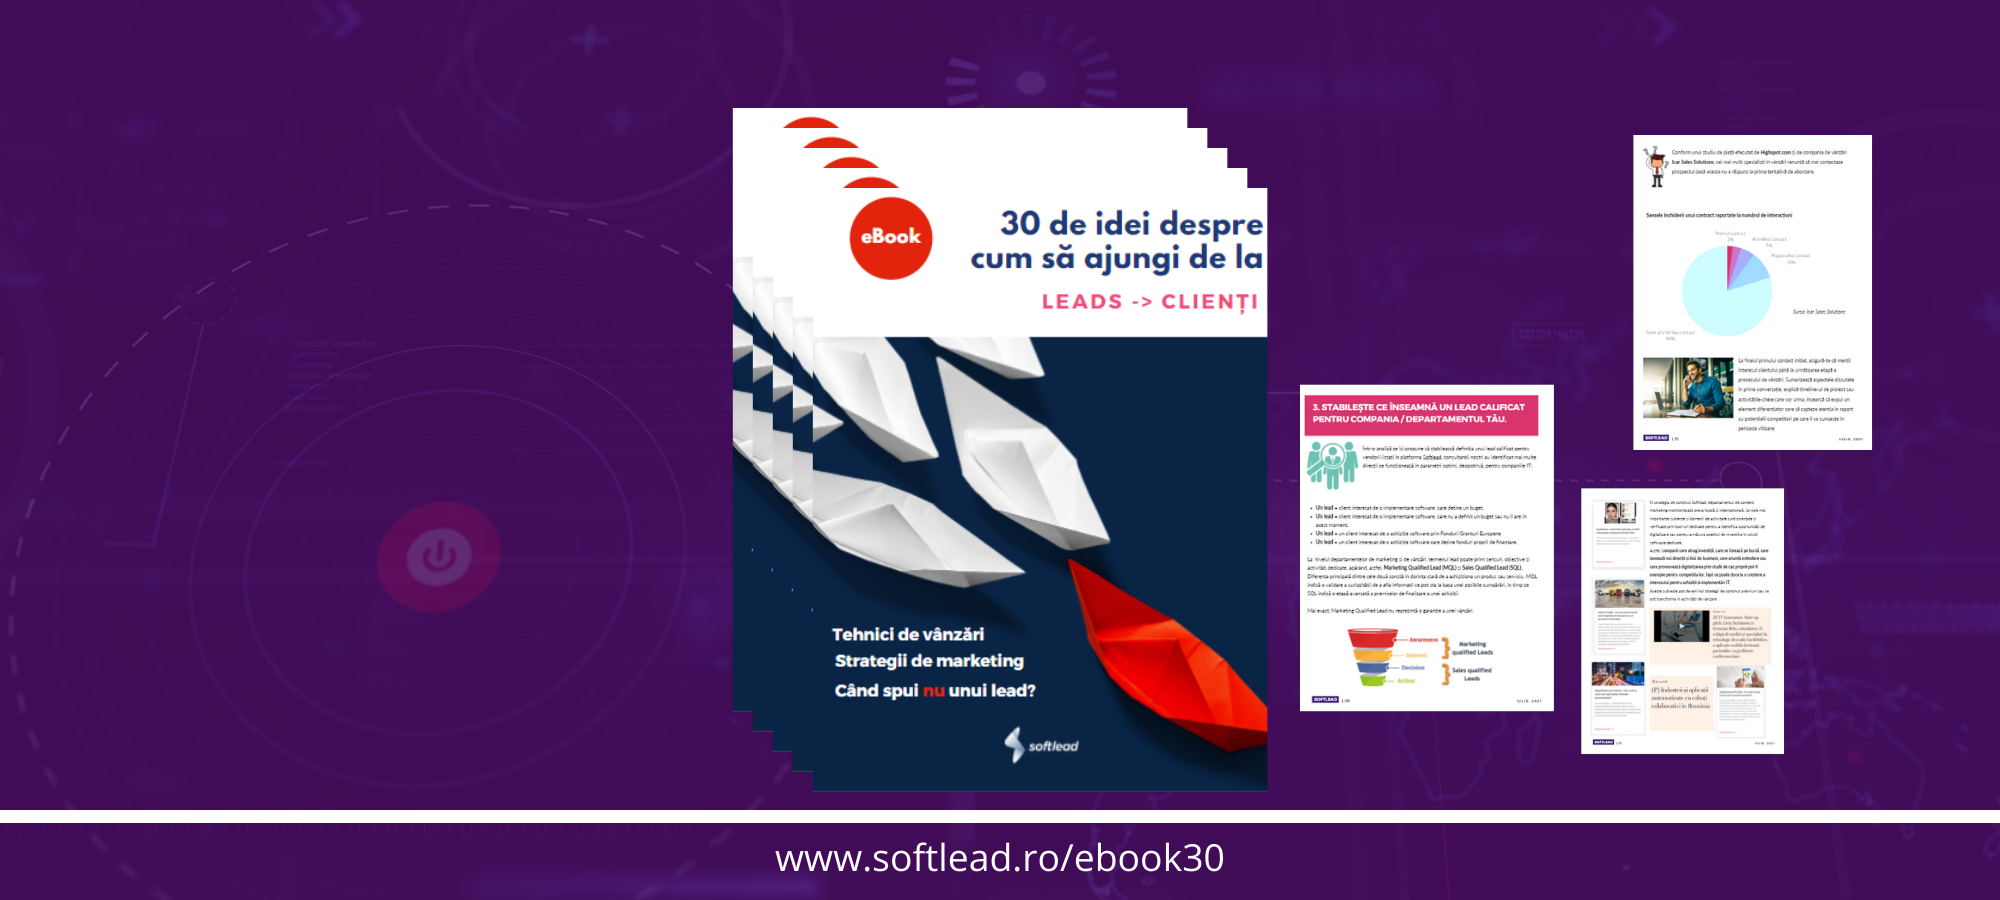 Softlead lansează un eBook dedicat creșterii vânzărilor în companiile de IT